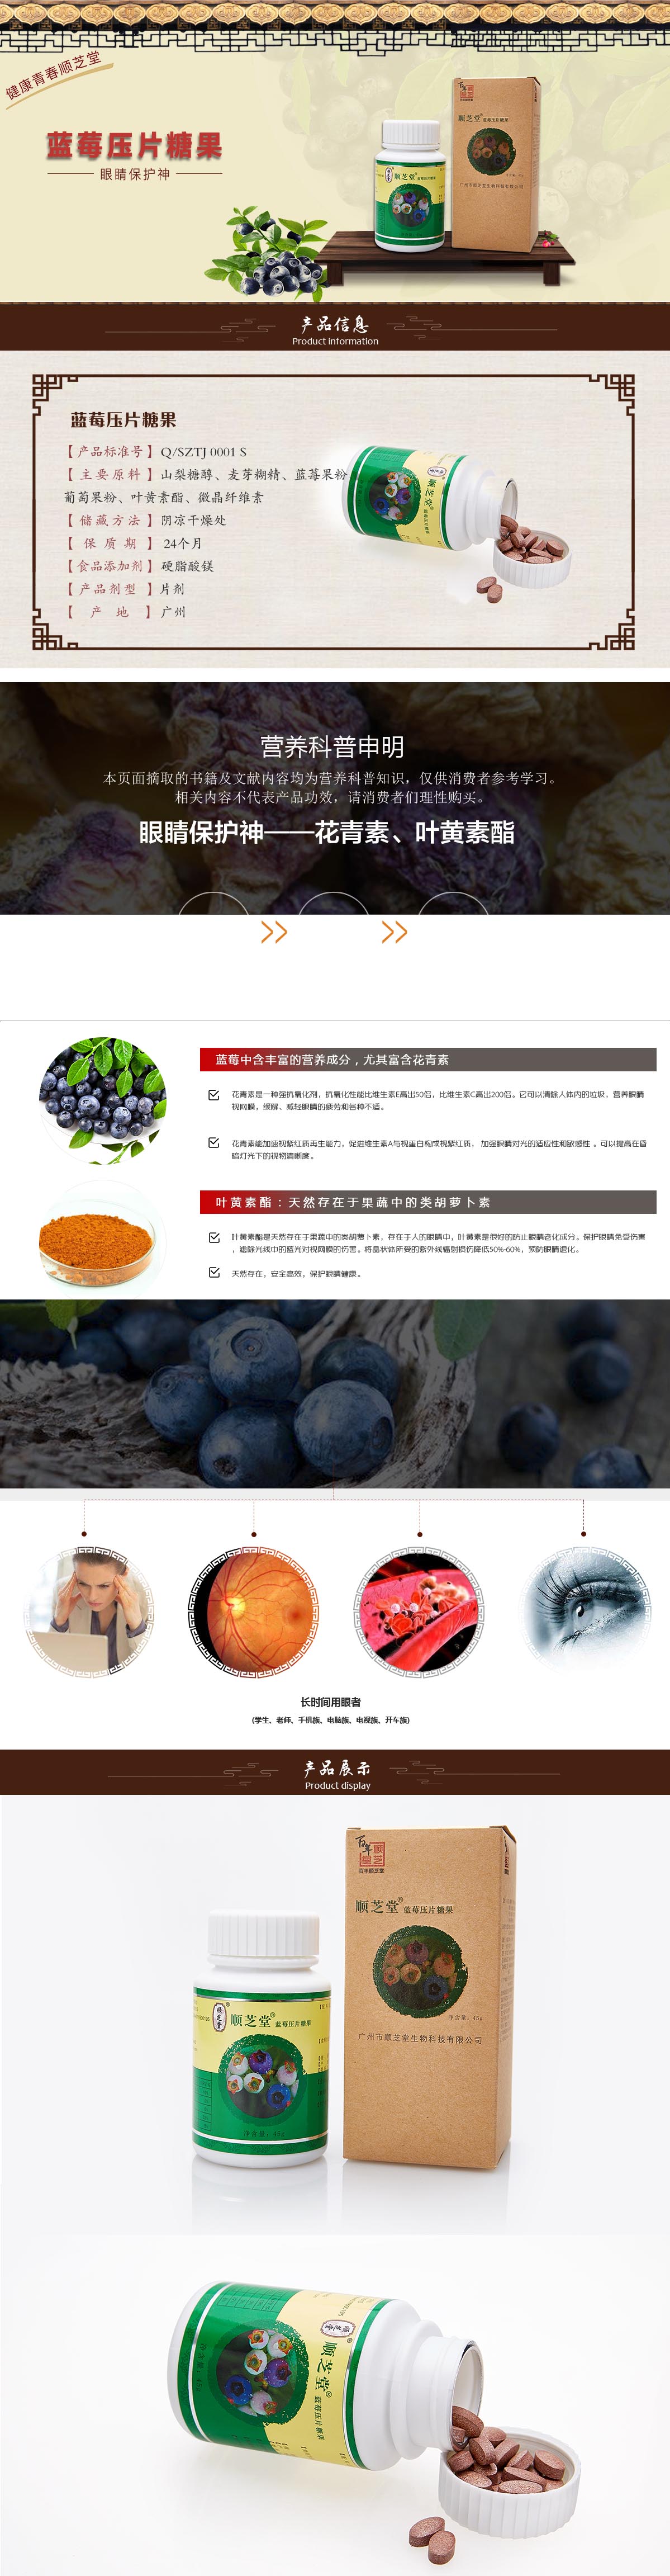 健康食品-蓝莓.jpg